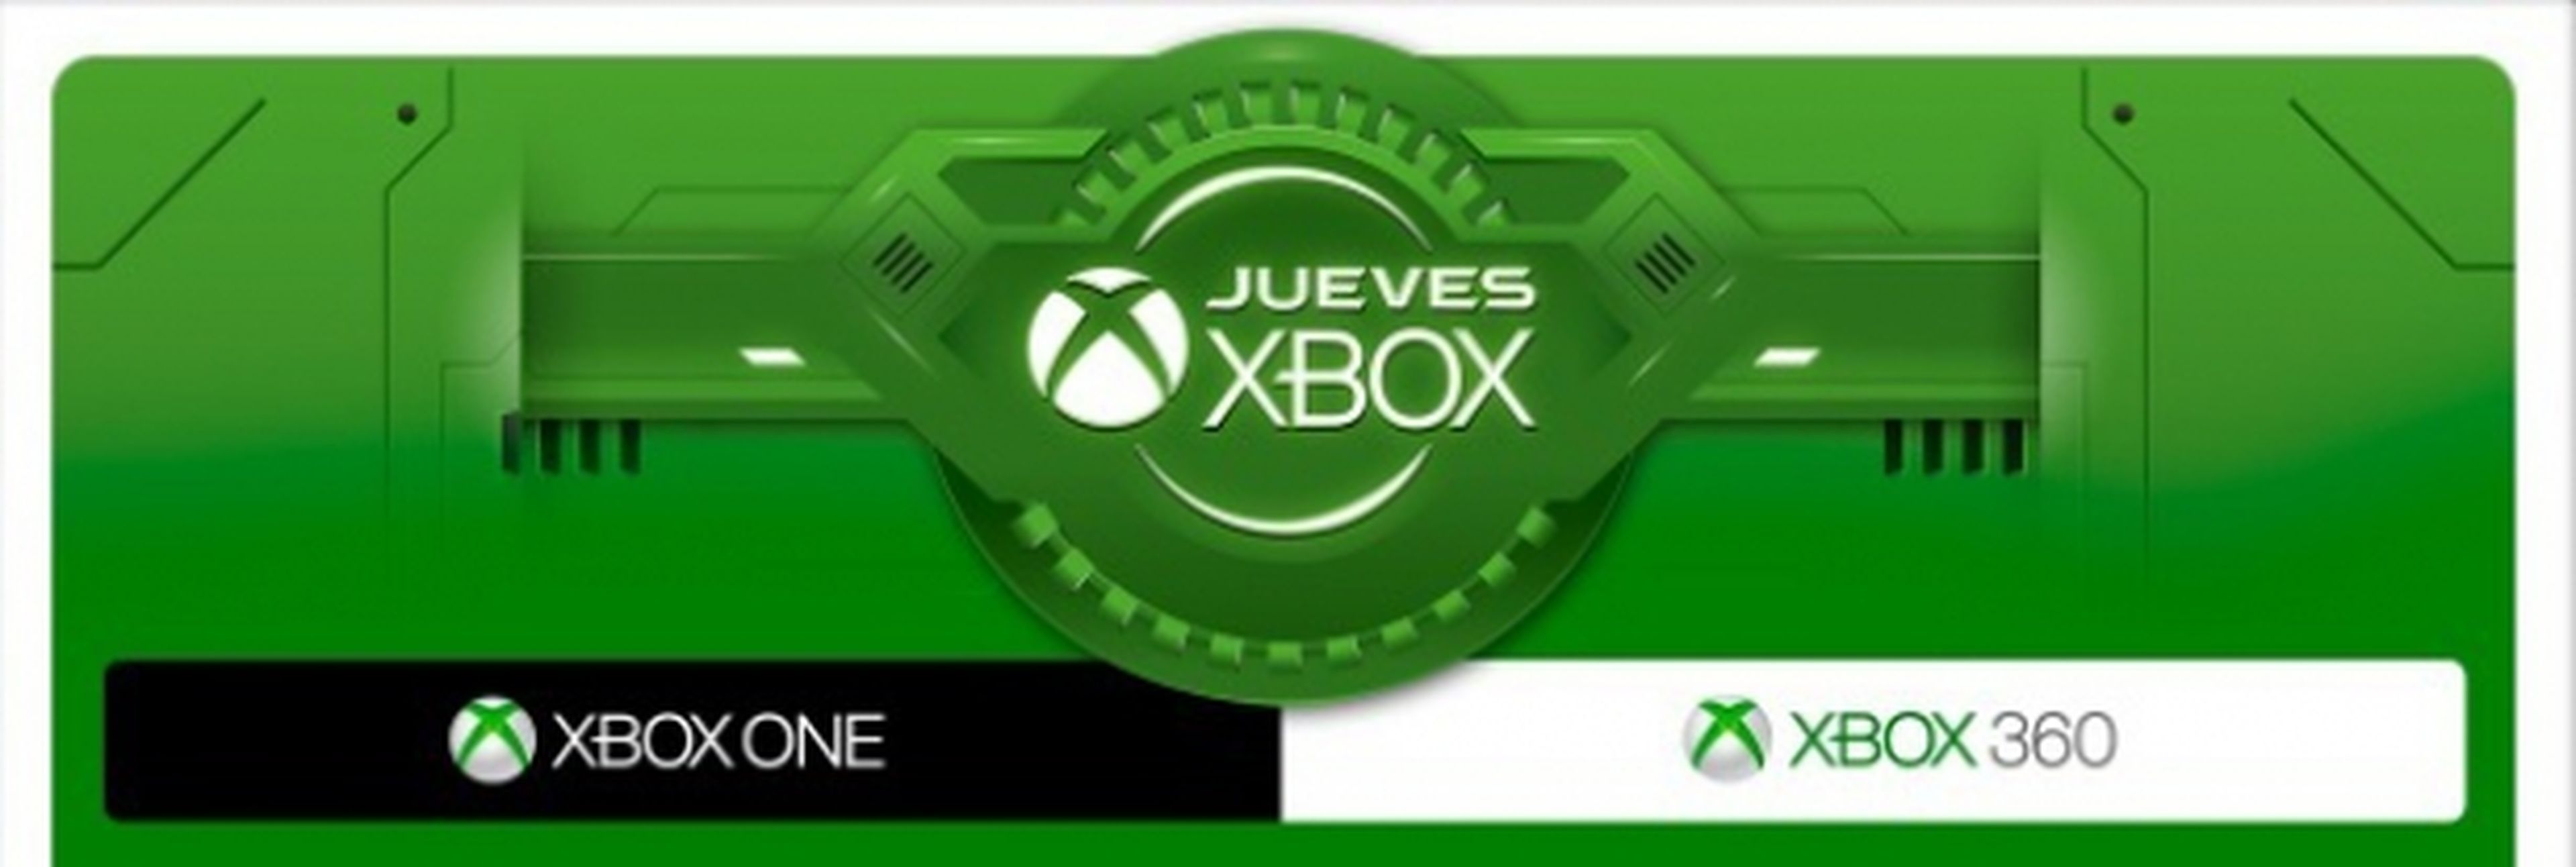 Jueves Xbox en GAME: Ofertas del 16/07/2015